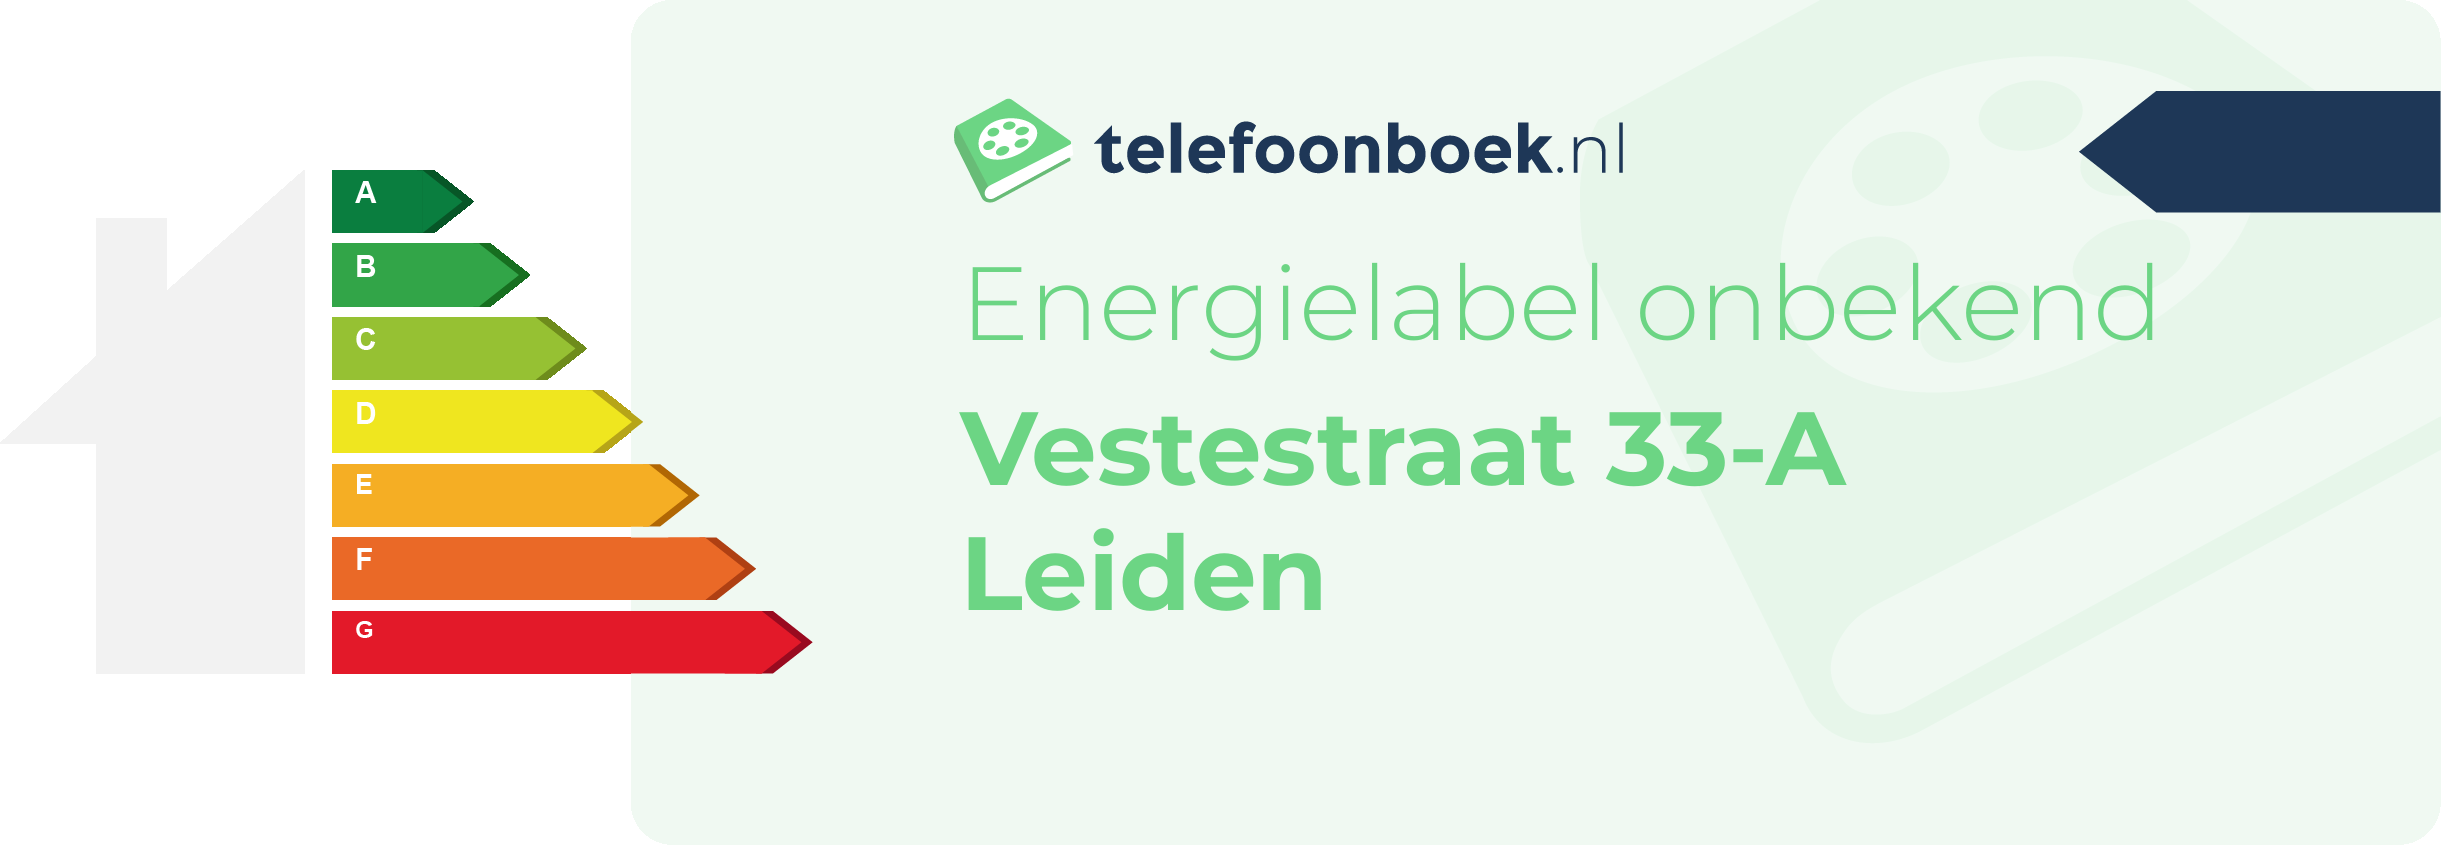 Energielabel Vestestraat 33-A Leiden